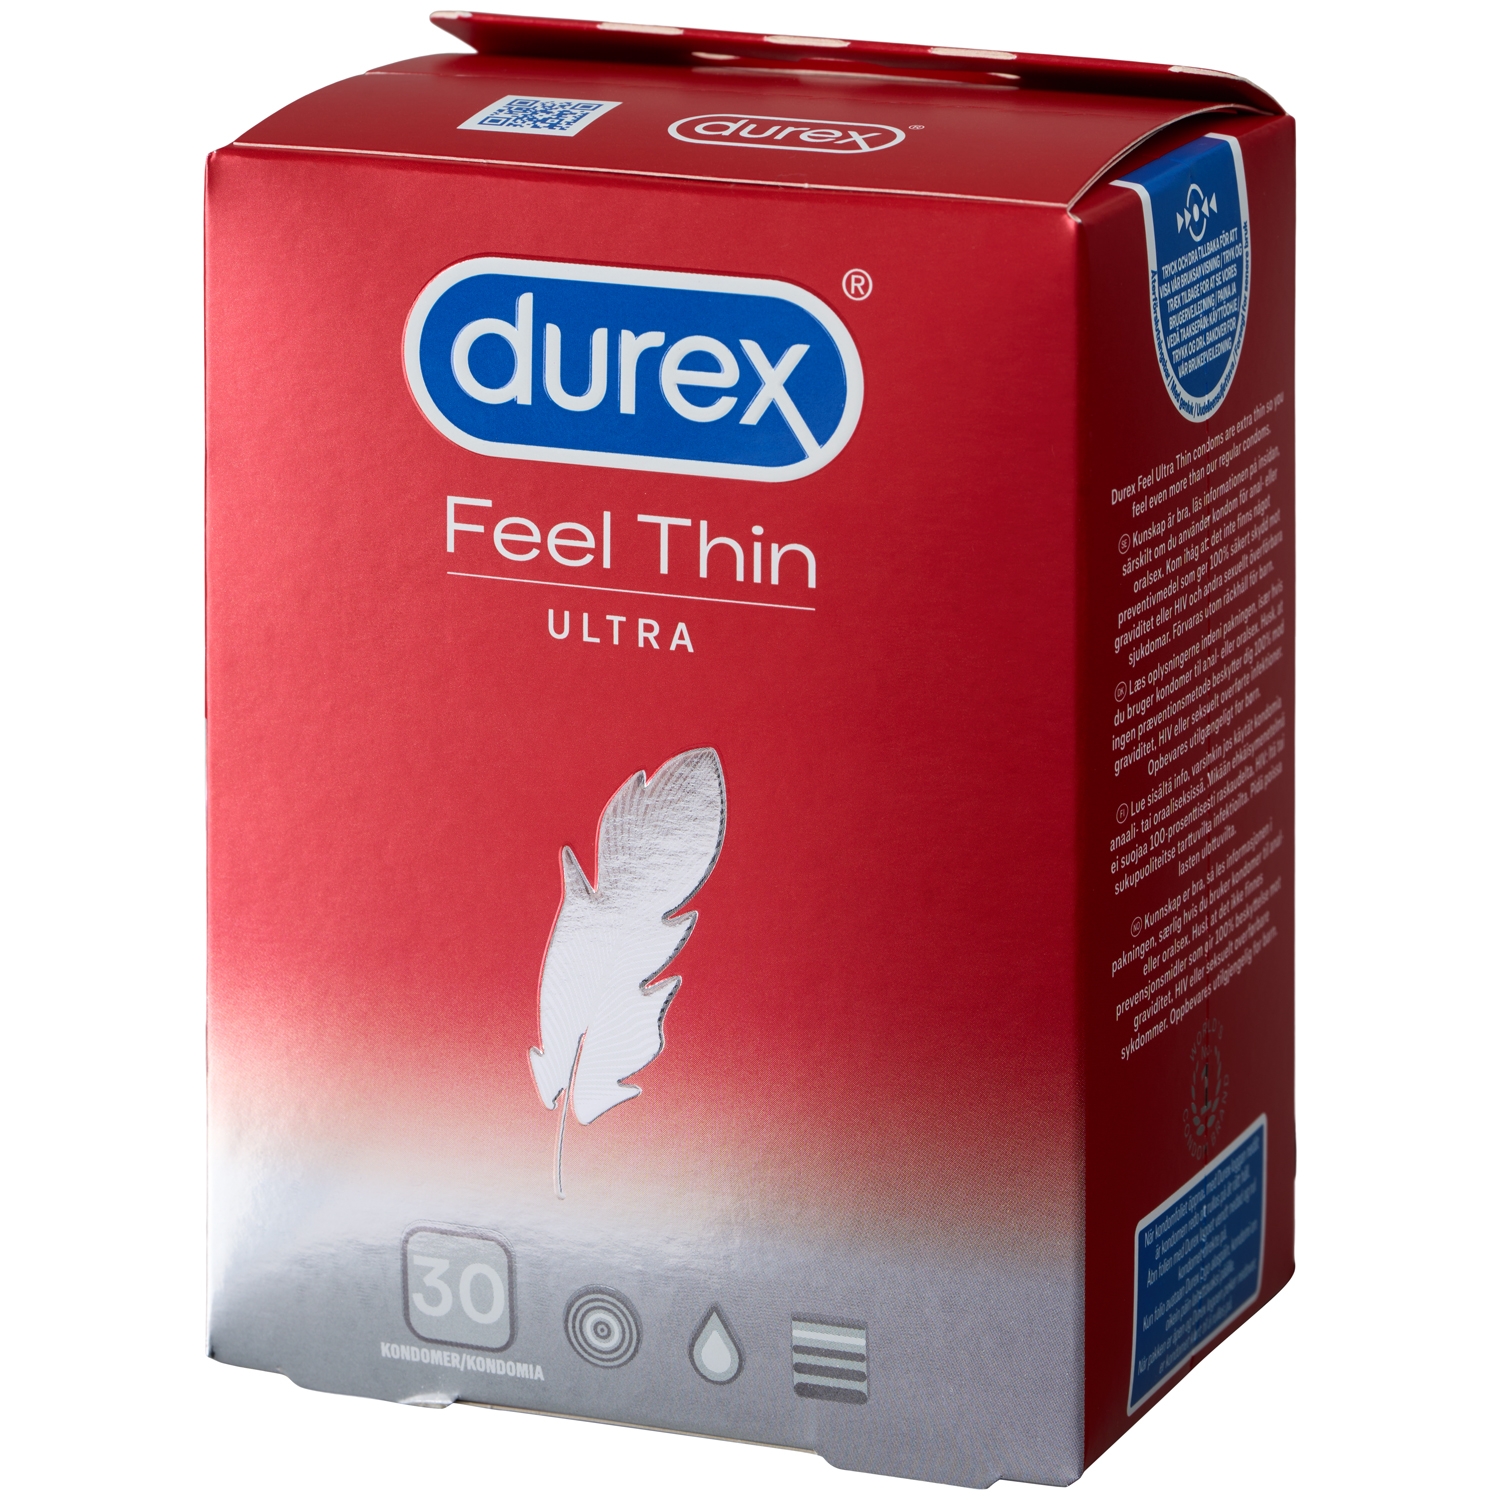 Durex Feel Thin Ultra Kondomer 30 stk - Rød